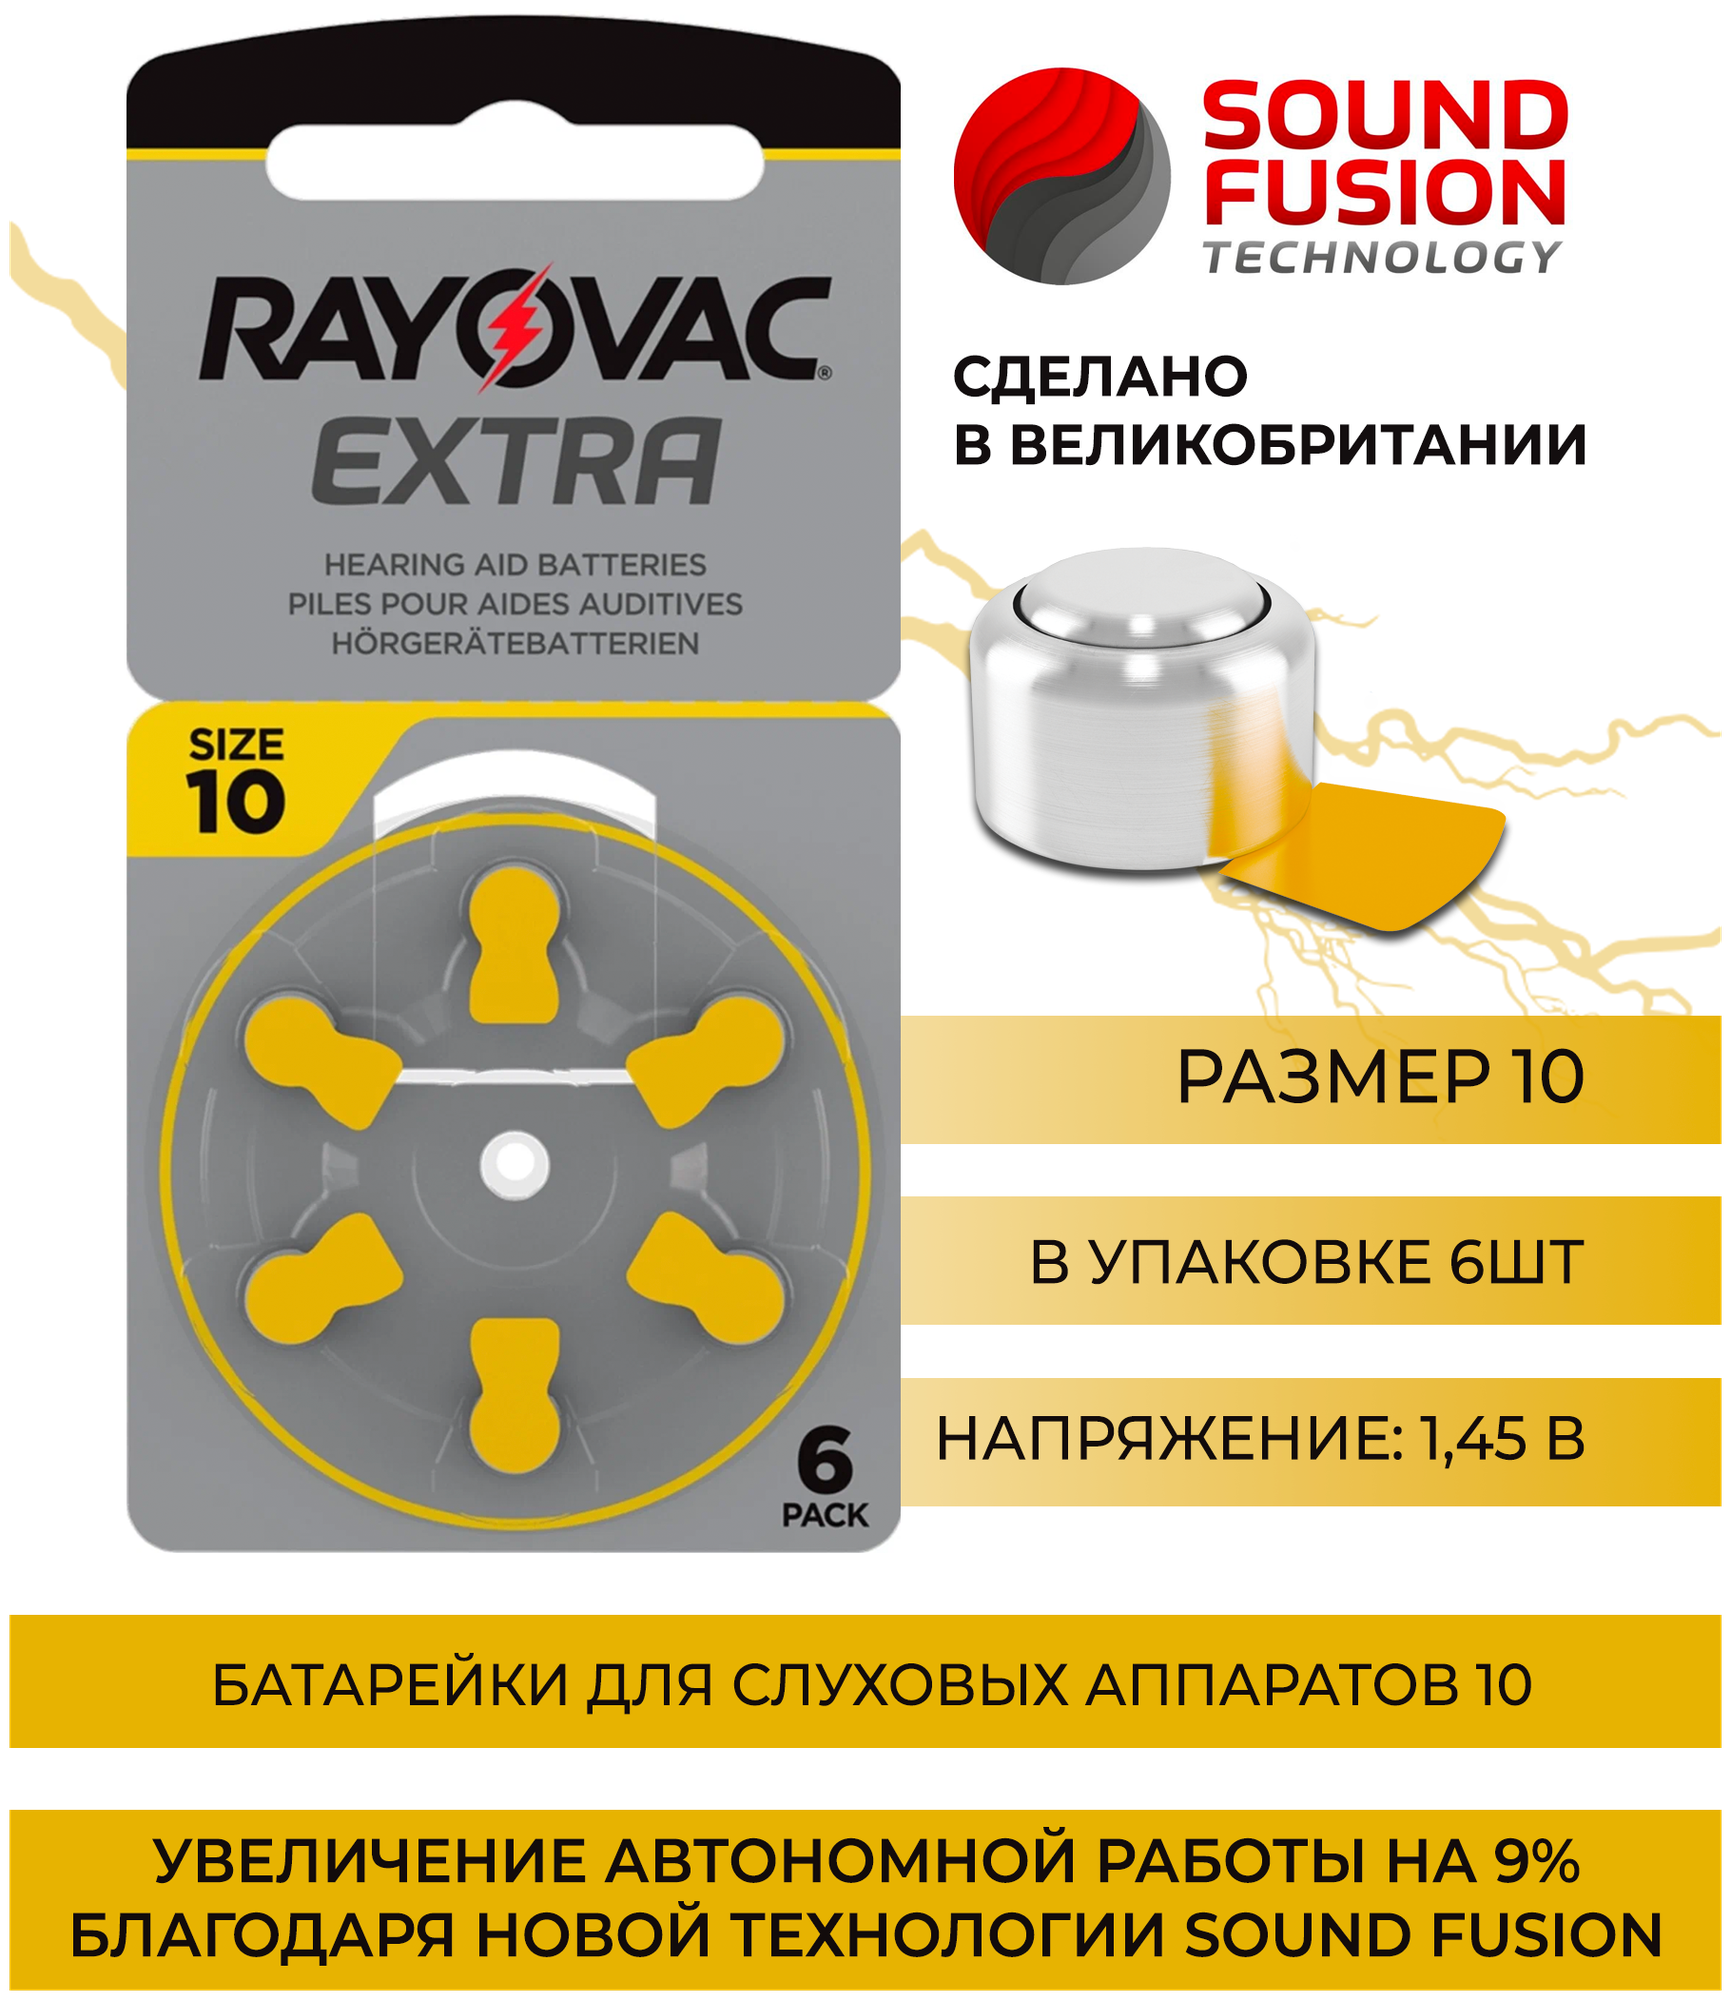 Батарейки Rayovac EXTRA 10 (PR 70) "Sound Fusion", для слуховых аппаратов, 1 блистер, 6 батареек